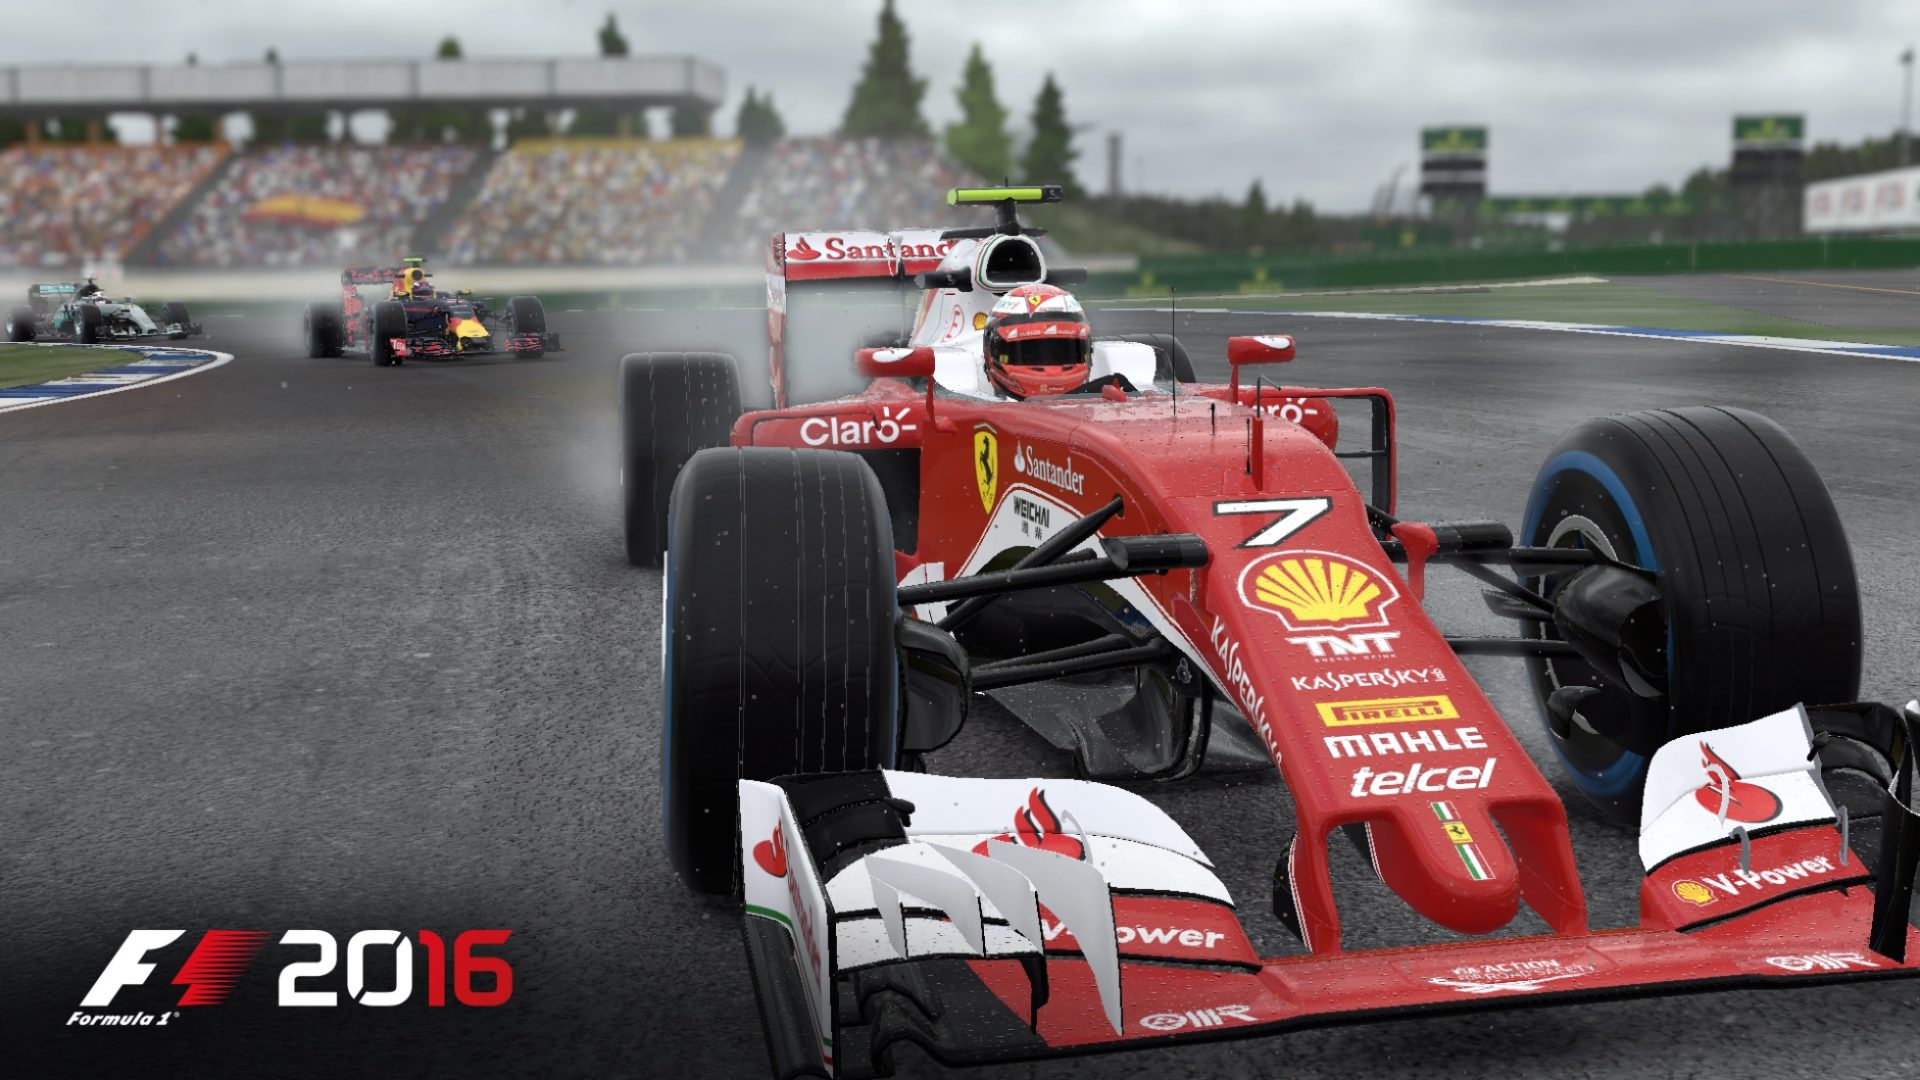 Novo trailer de F1 2016 mostra ação dos carros no jogo de corrida